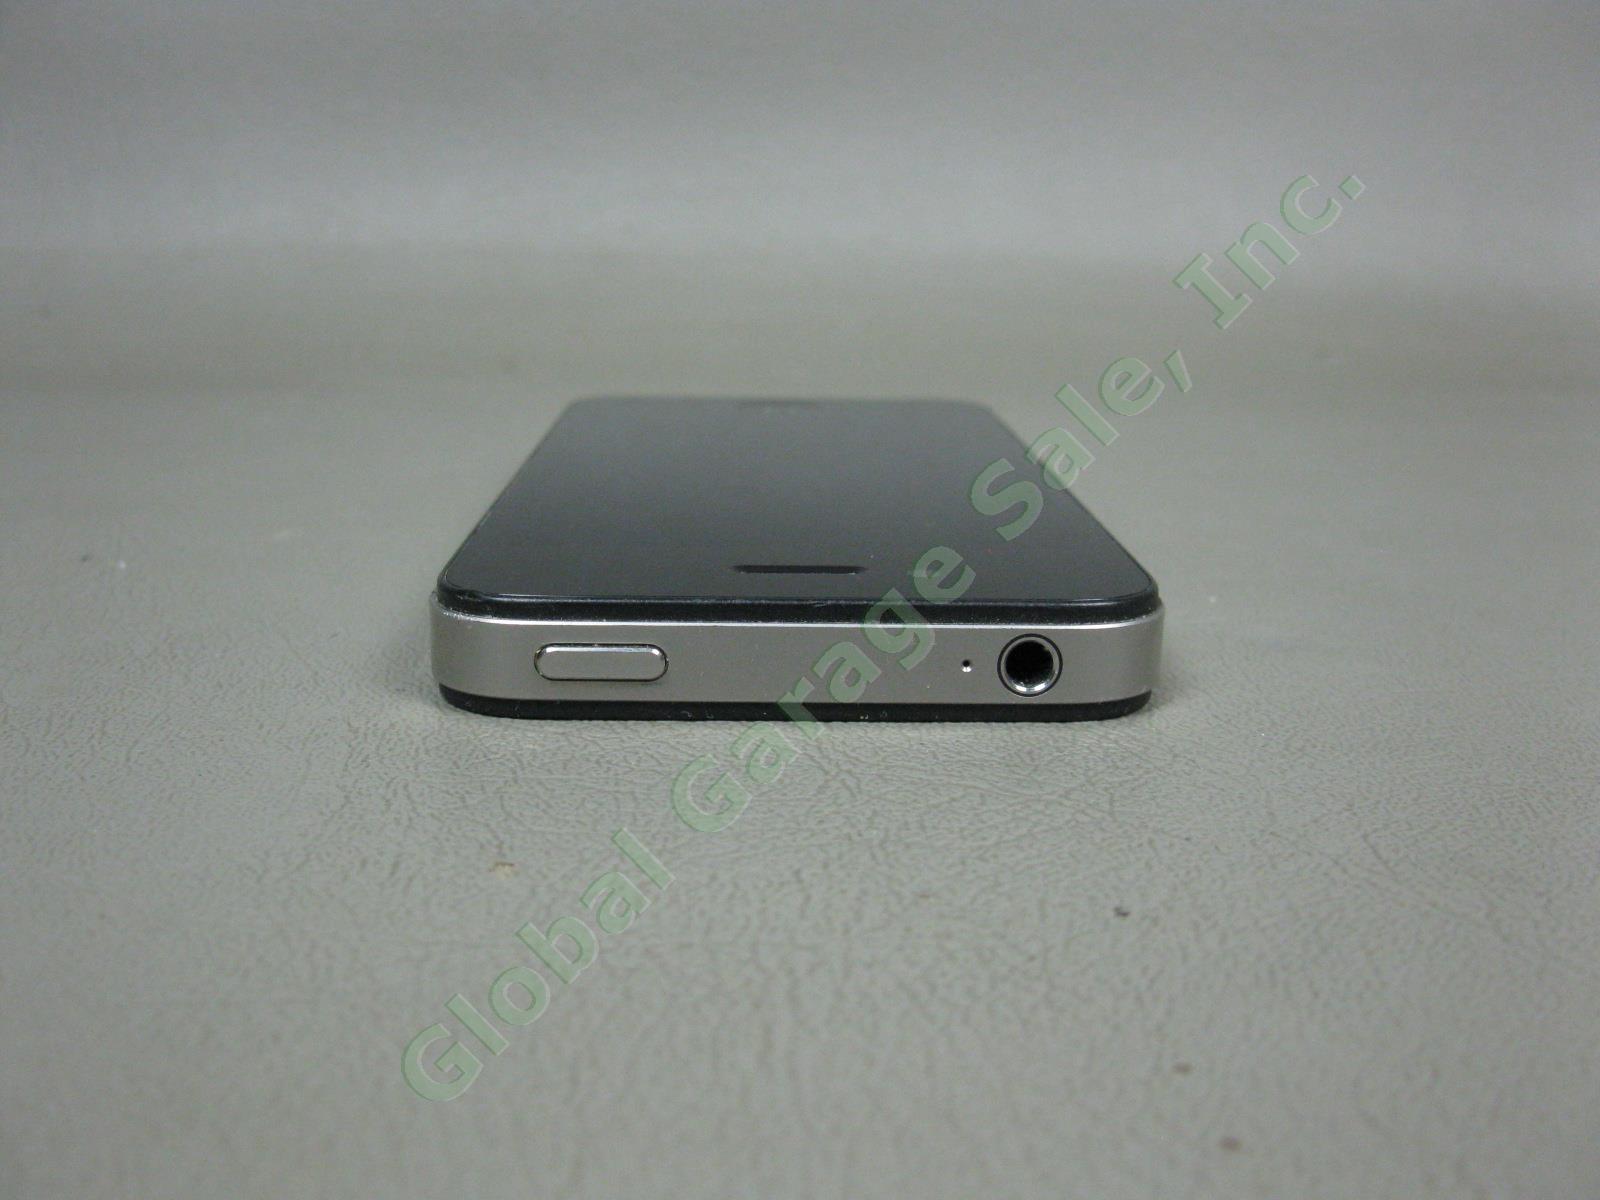 Apple iPhone 4s 16GB Black Model A1387 MD276LL/A Verizon Unlocked + Reset NO RES 5